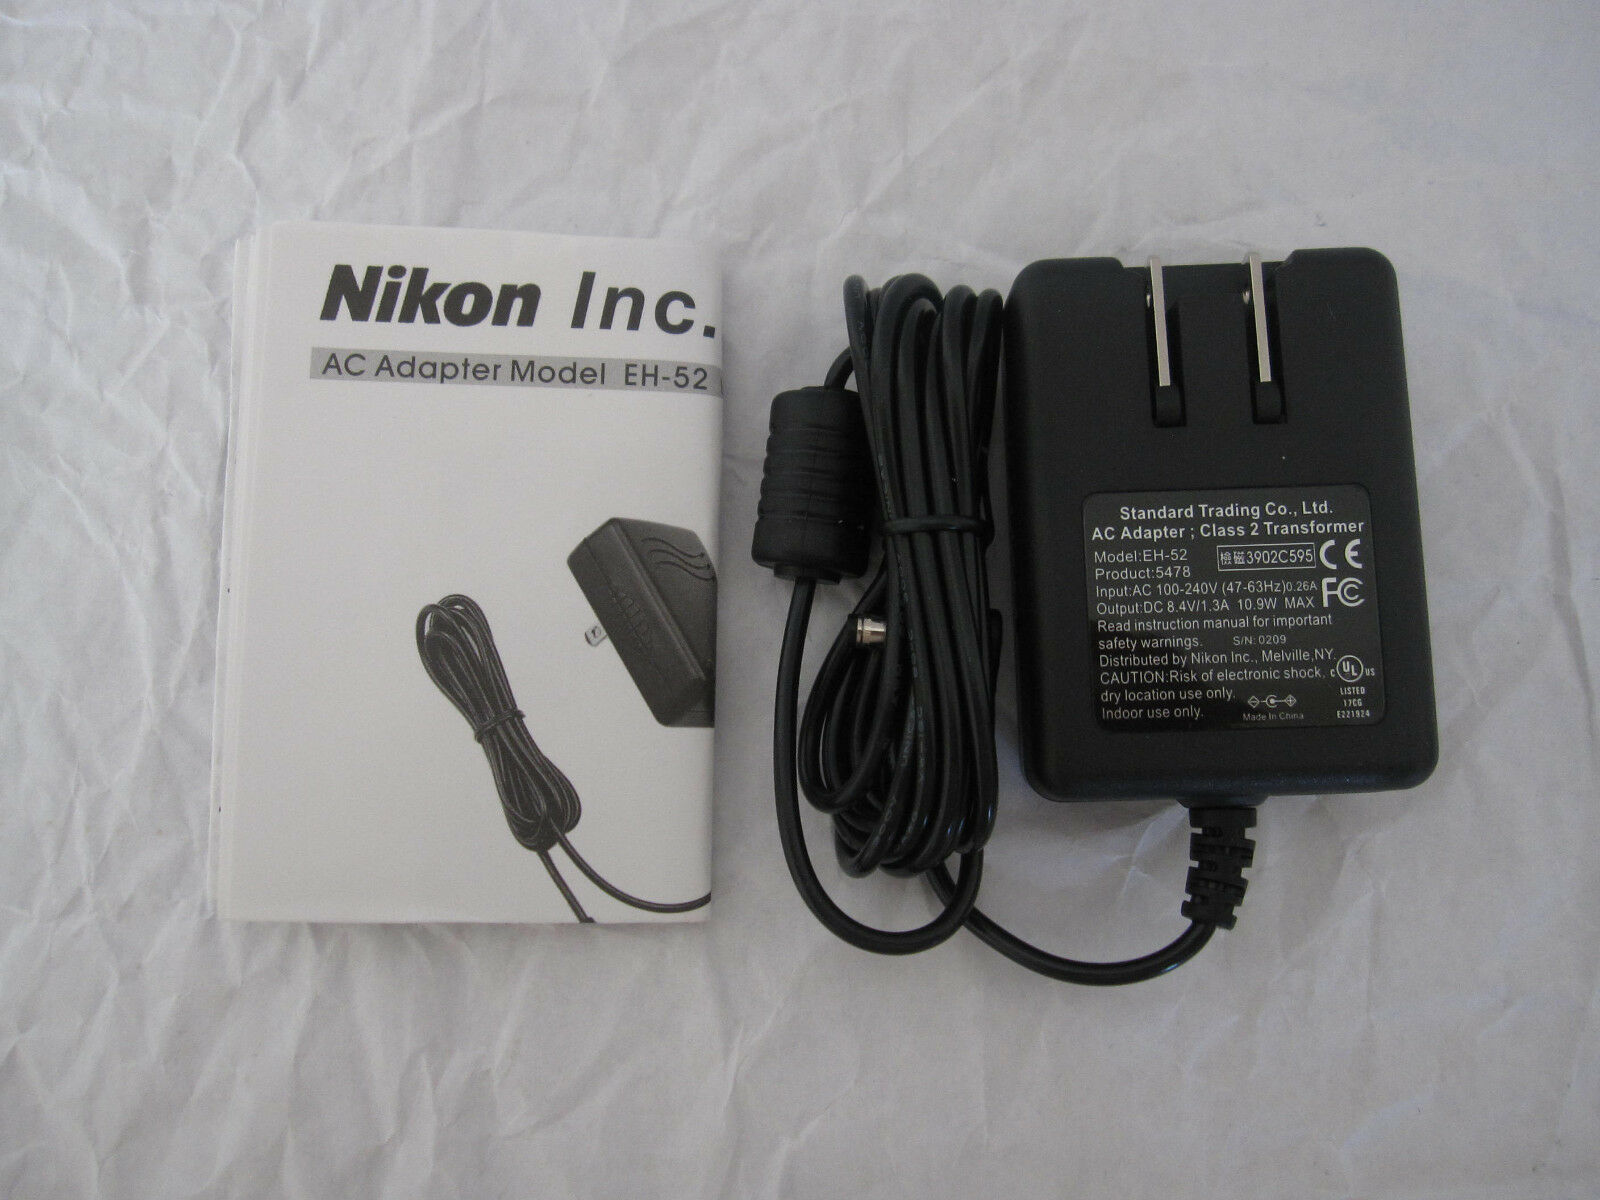 New 8.4V 1.3A Nikon EH-52 Class 2 Transformer Ac Adapter - Click Image to Close